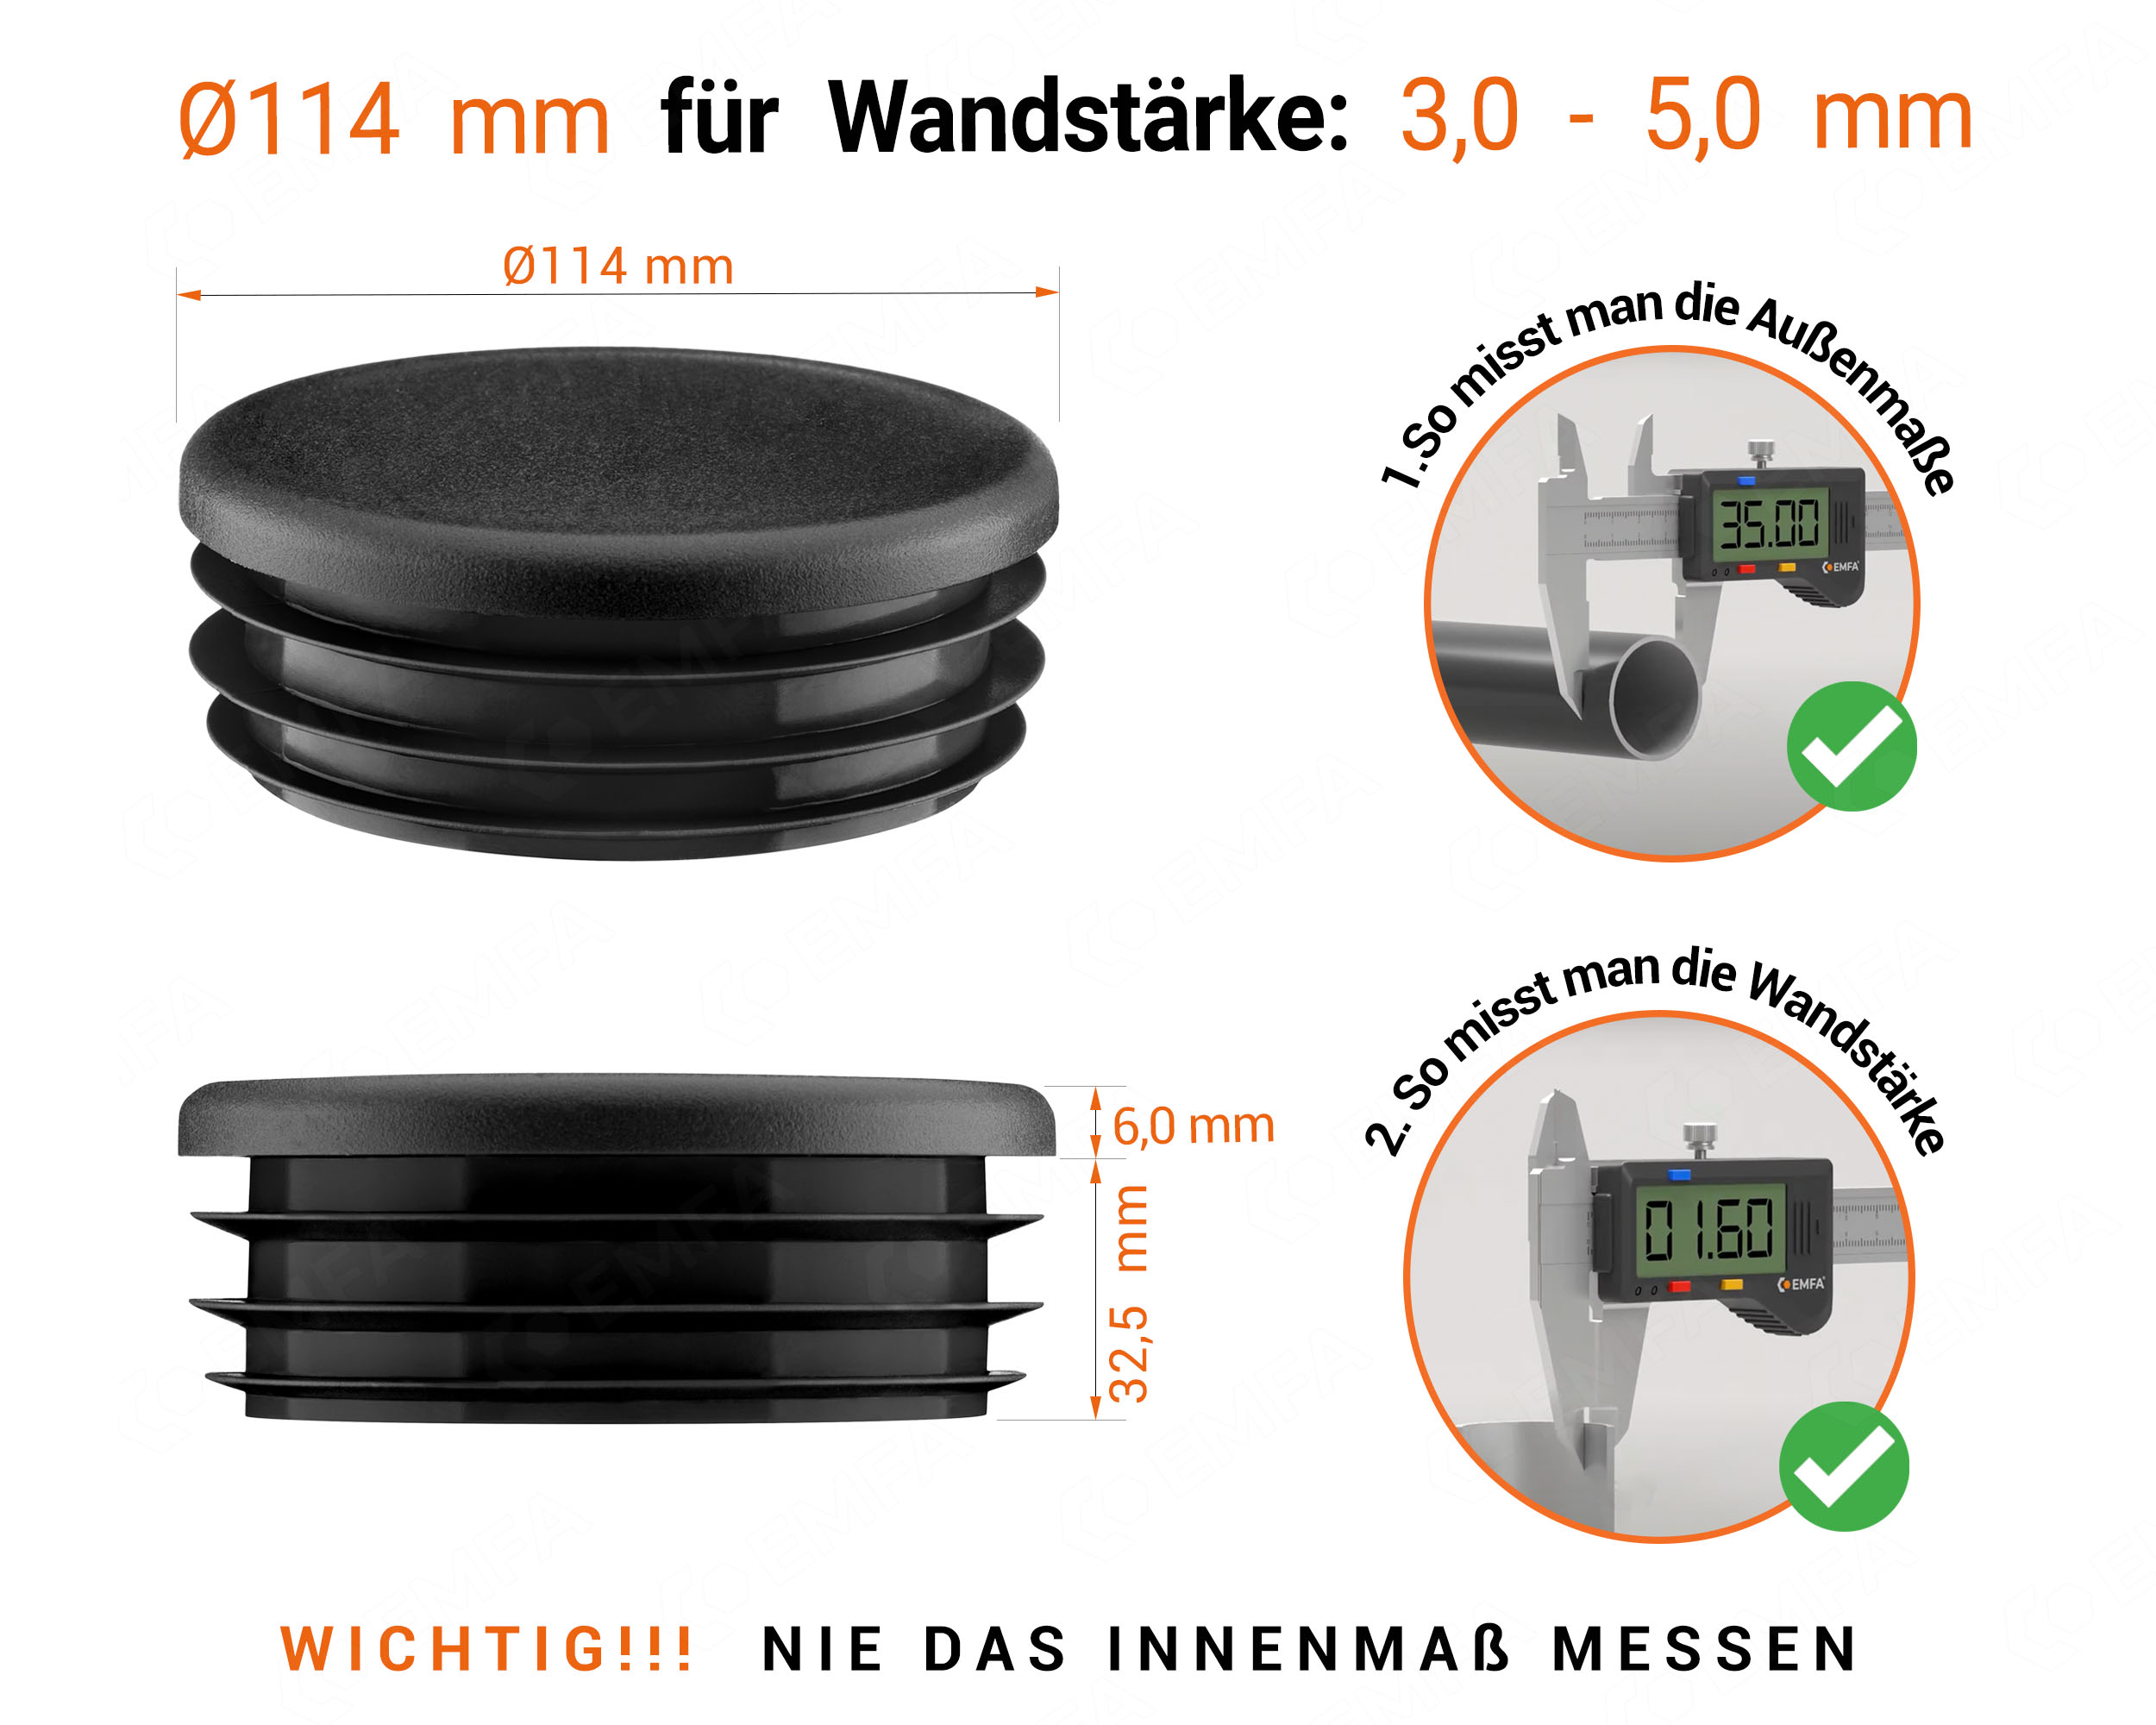 Schwarze Endkappe für Rundrohre in der Größe 114 mm mit technischen Abmessungen und Anleitung für korrekte Messung